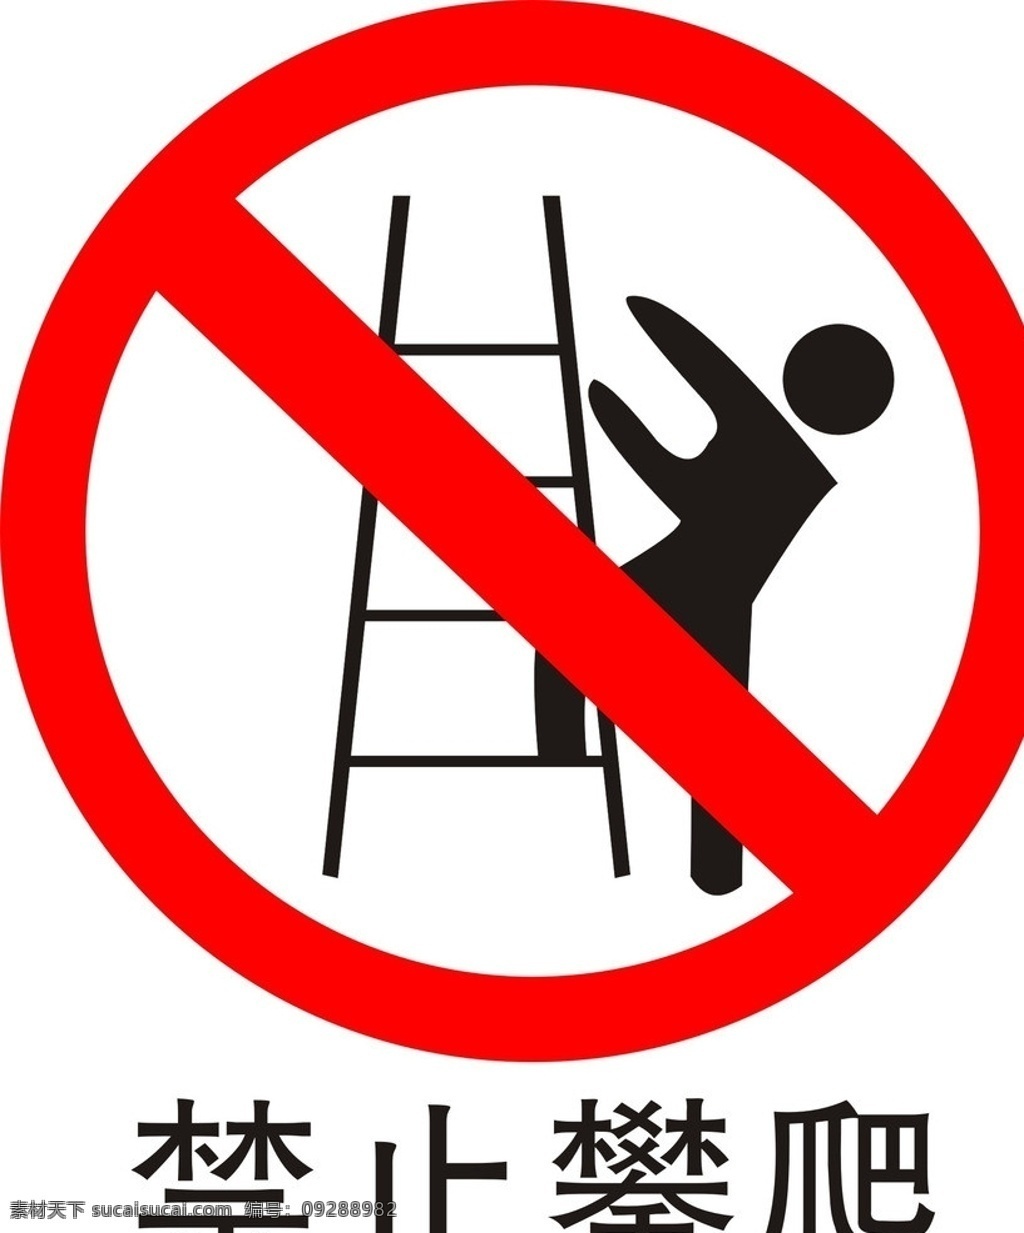 禁止攀爬标志 标志 公共标识标志 标识标志图标 矢量